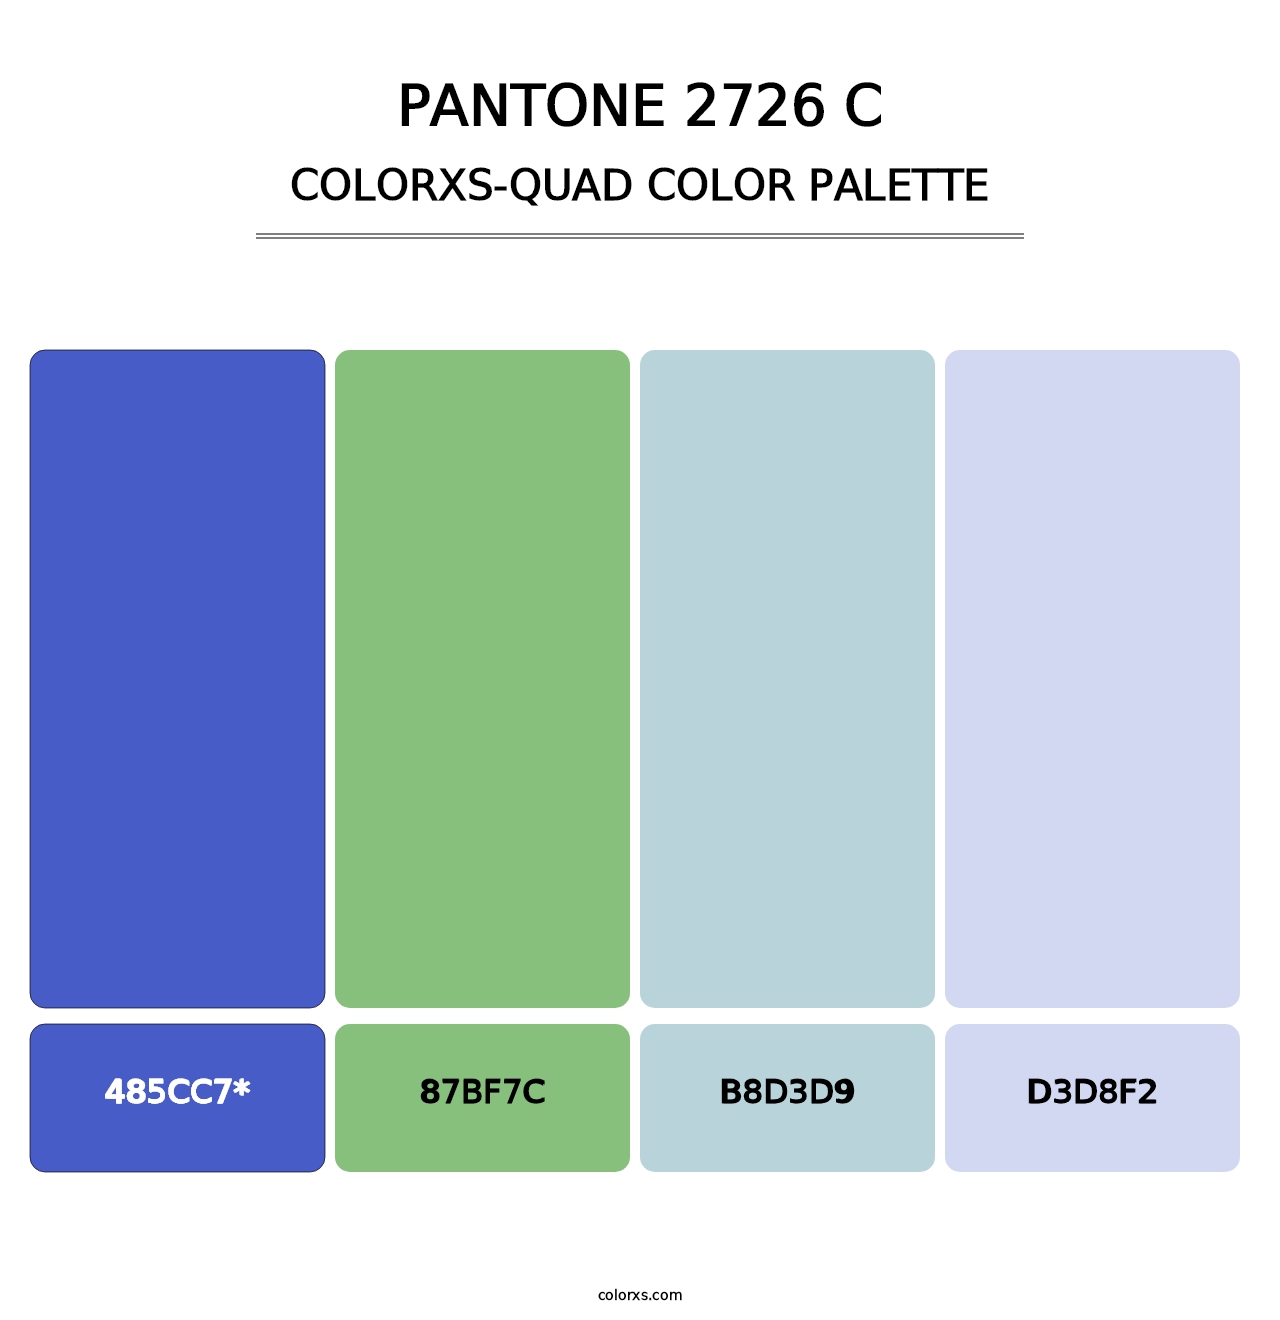 PANTONE 2726 C - Colorxs Quad Palette